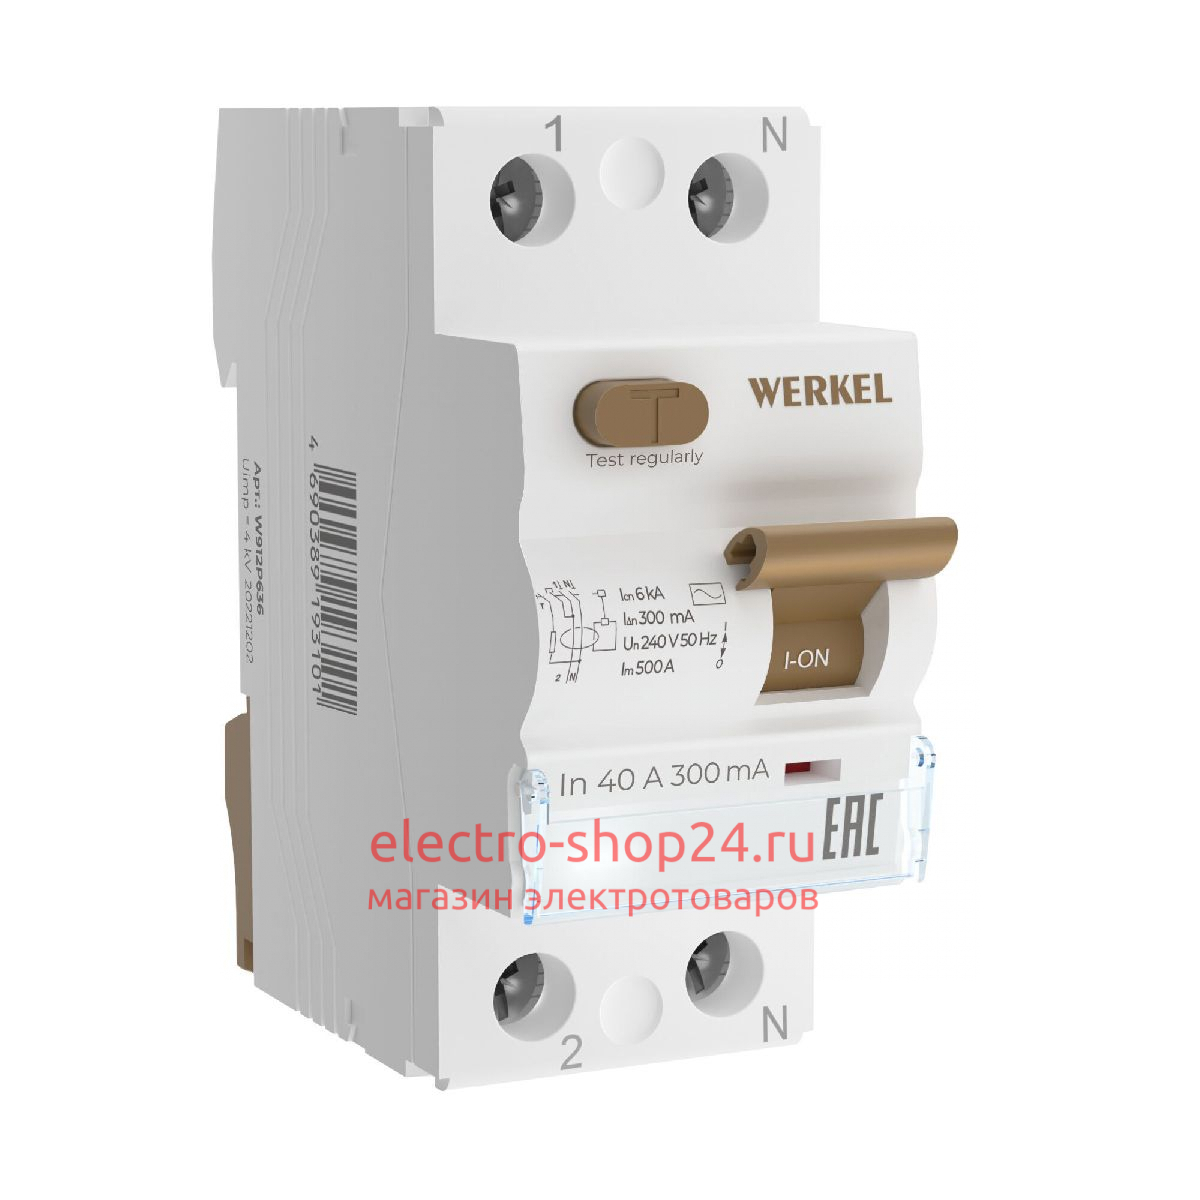 Устройство защитного отключения Werkel 4690389202803 W912P404 a065618 4690389202803 - магазин электротехники Electroshop